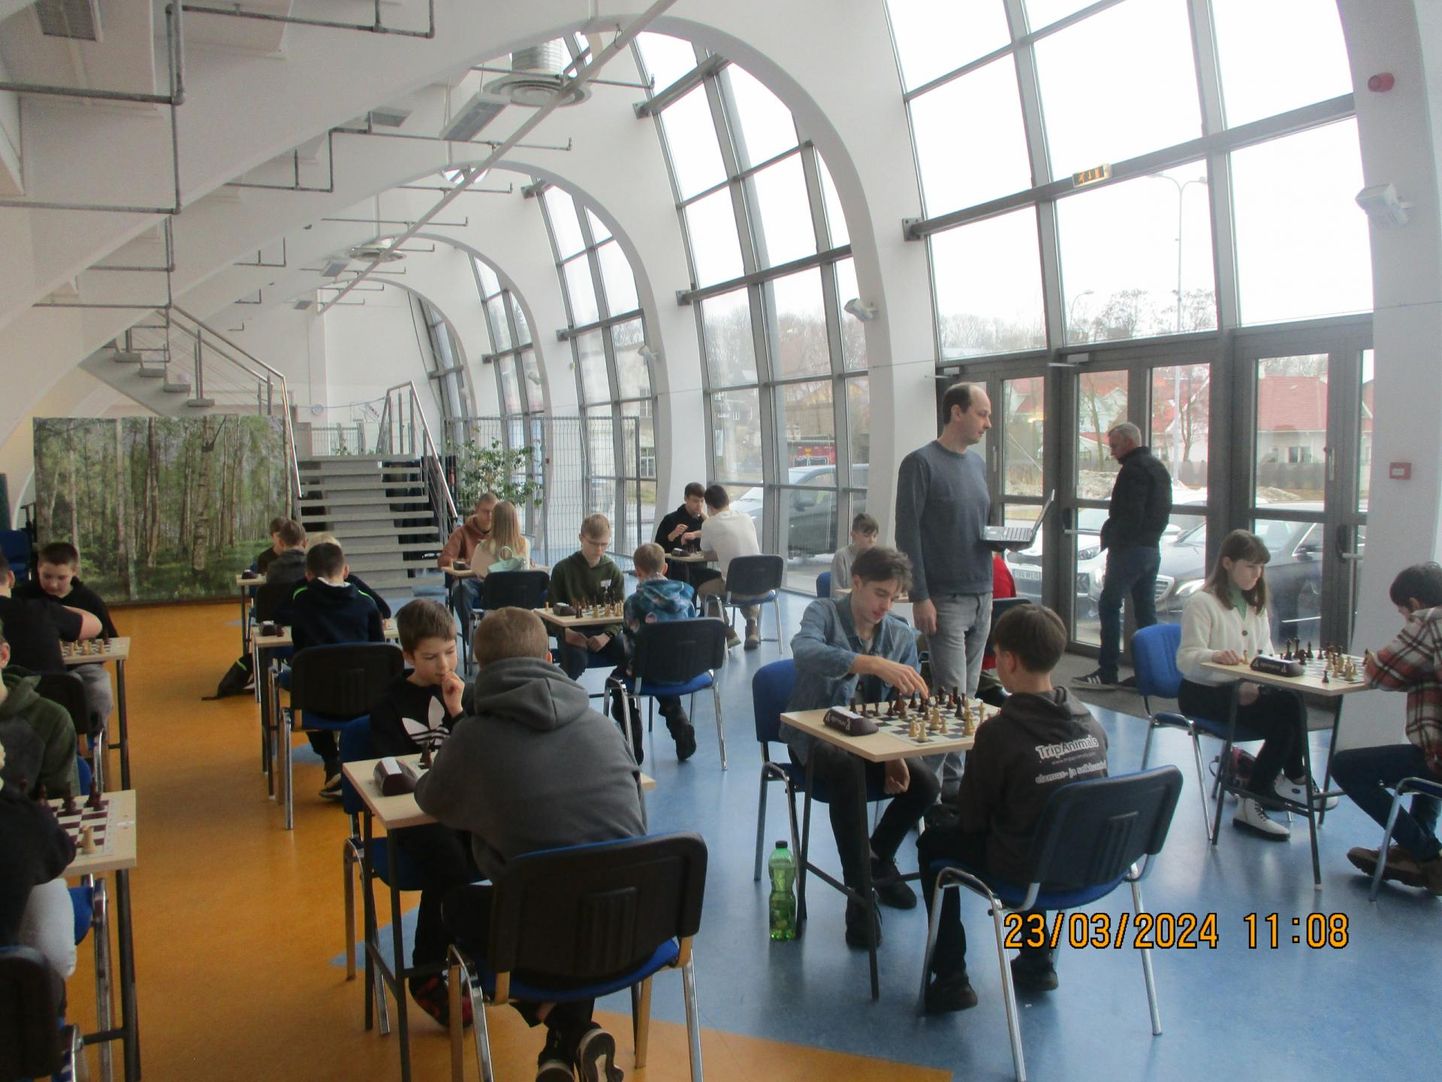 Lääne-Viru noorte malemeistrivõistlused toimusid Rakvere spordihoones.